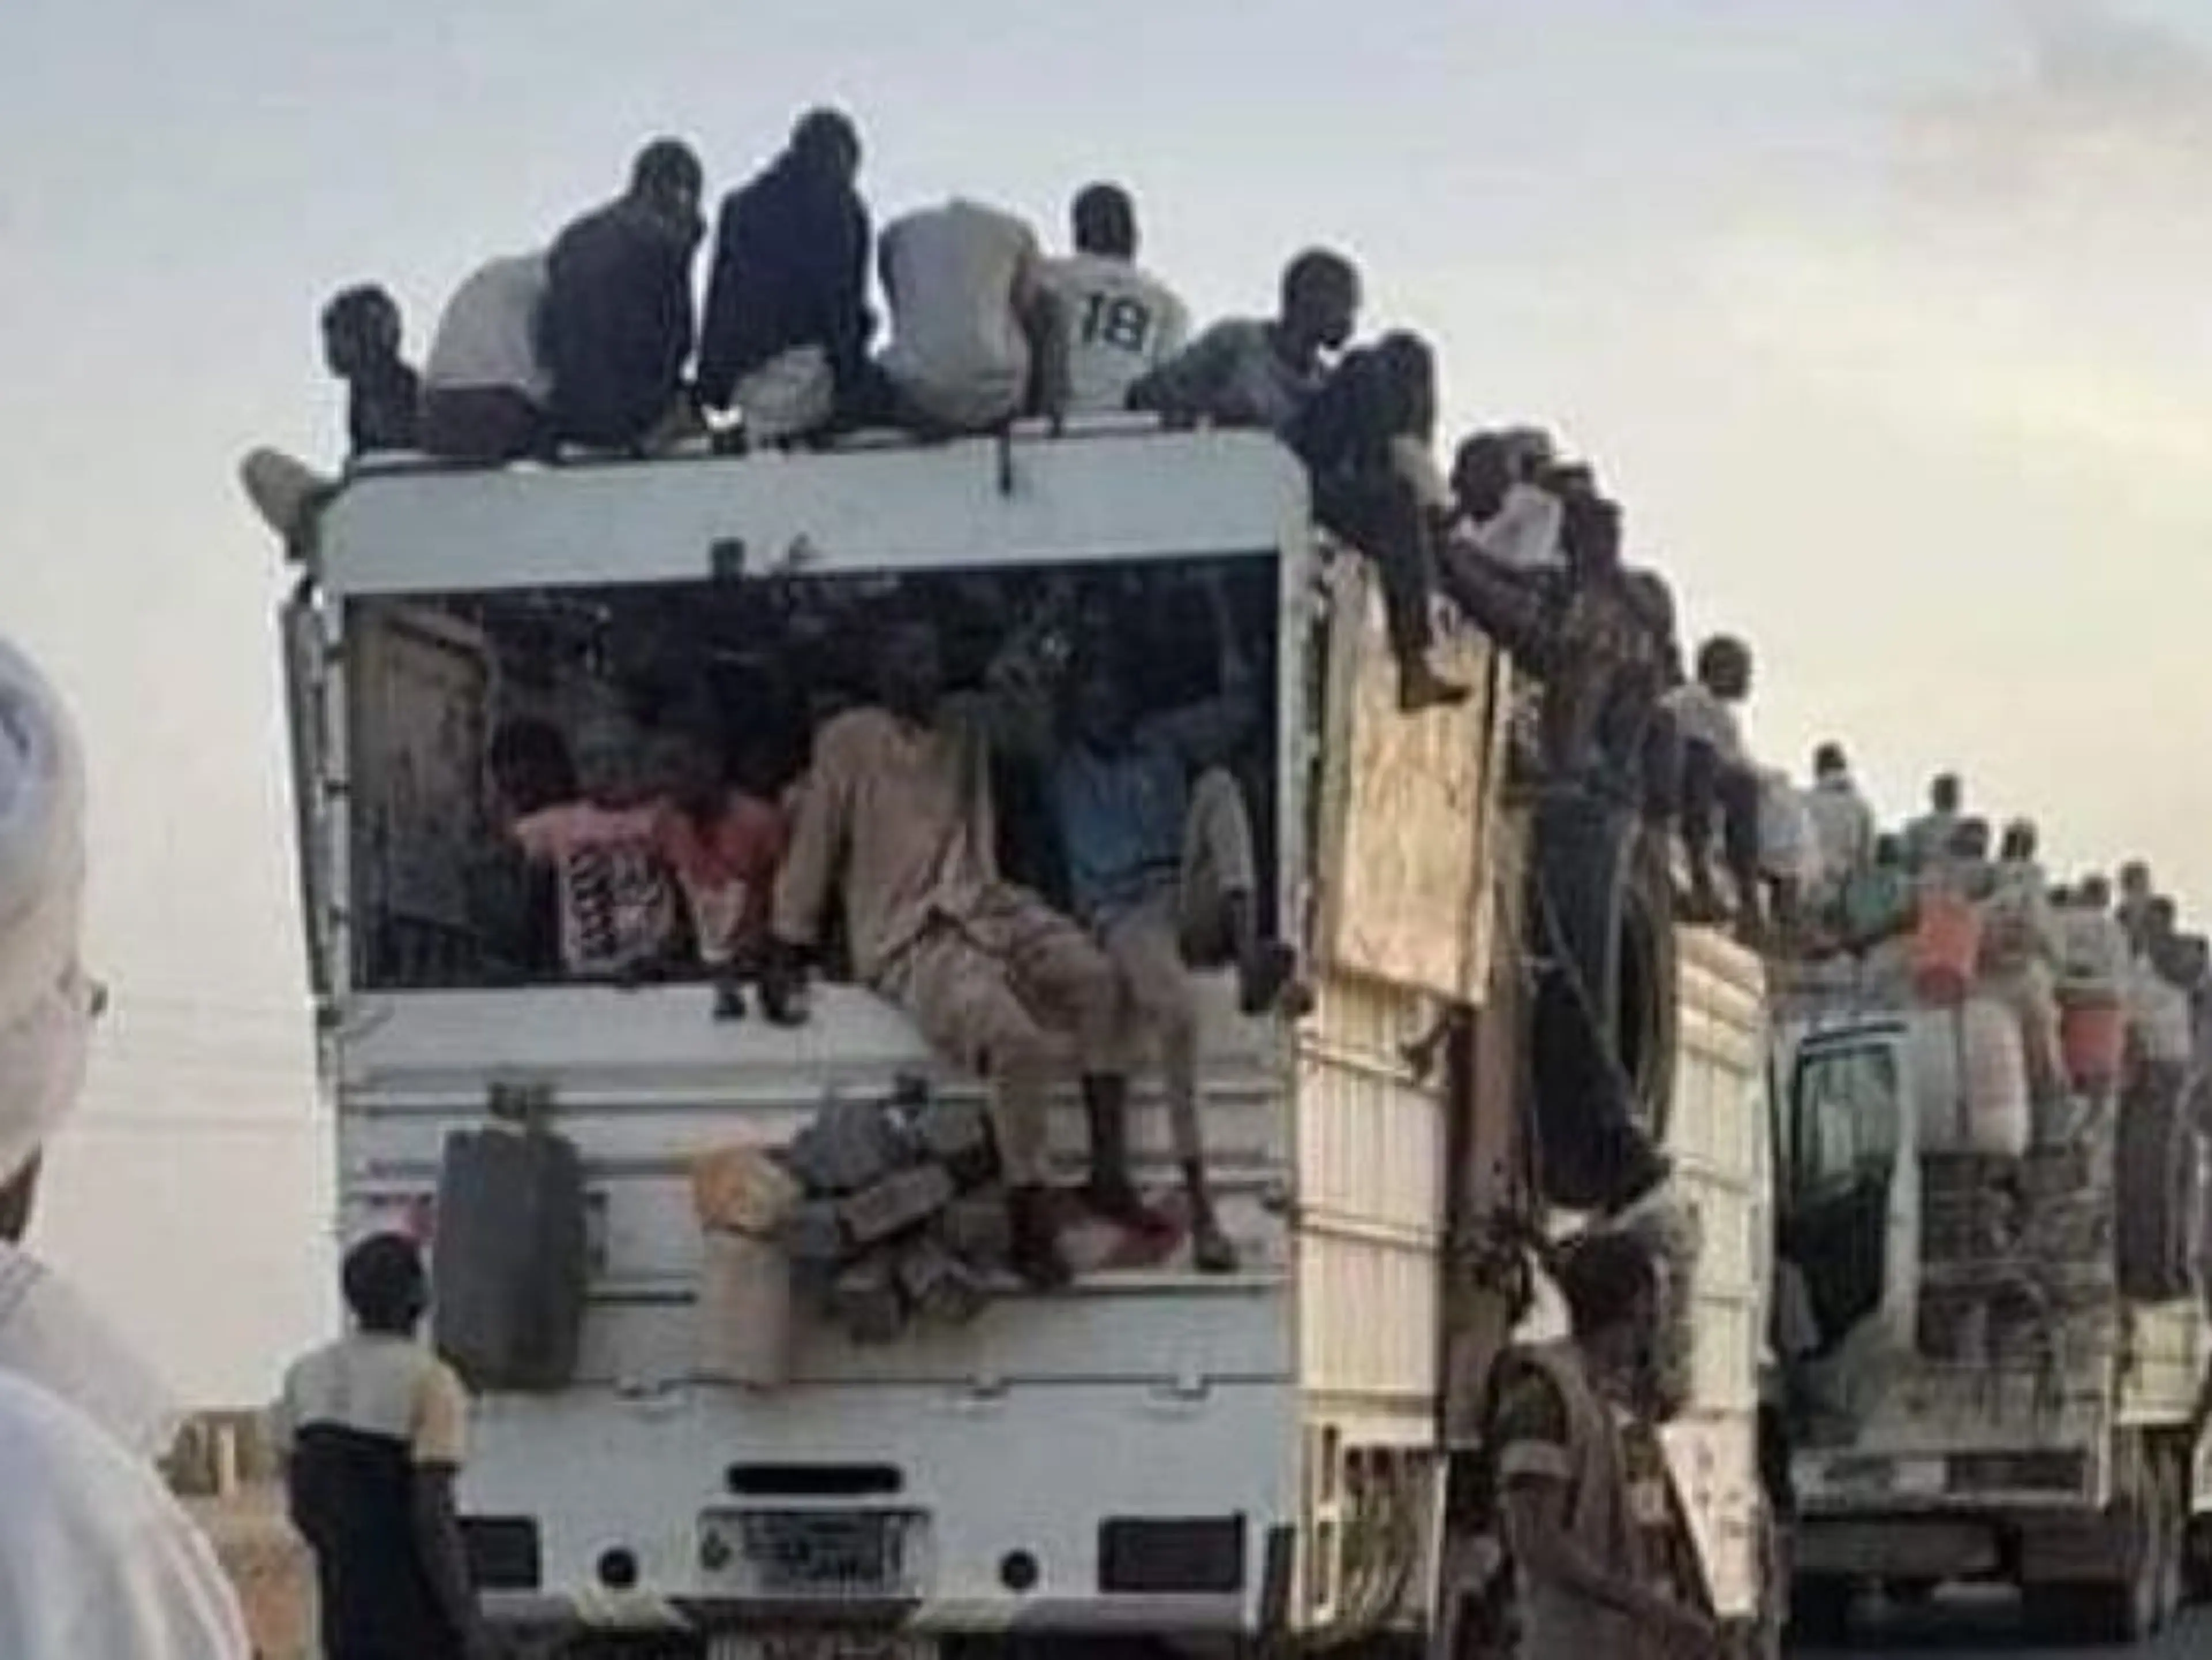 Sudan Crisis